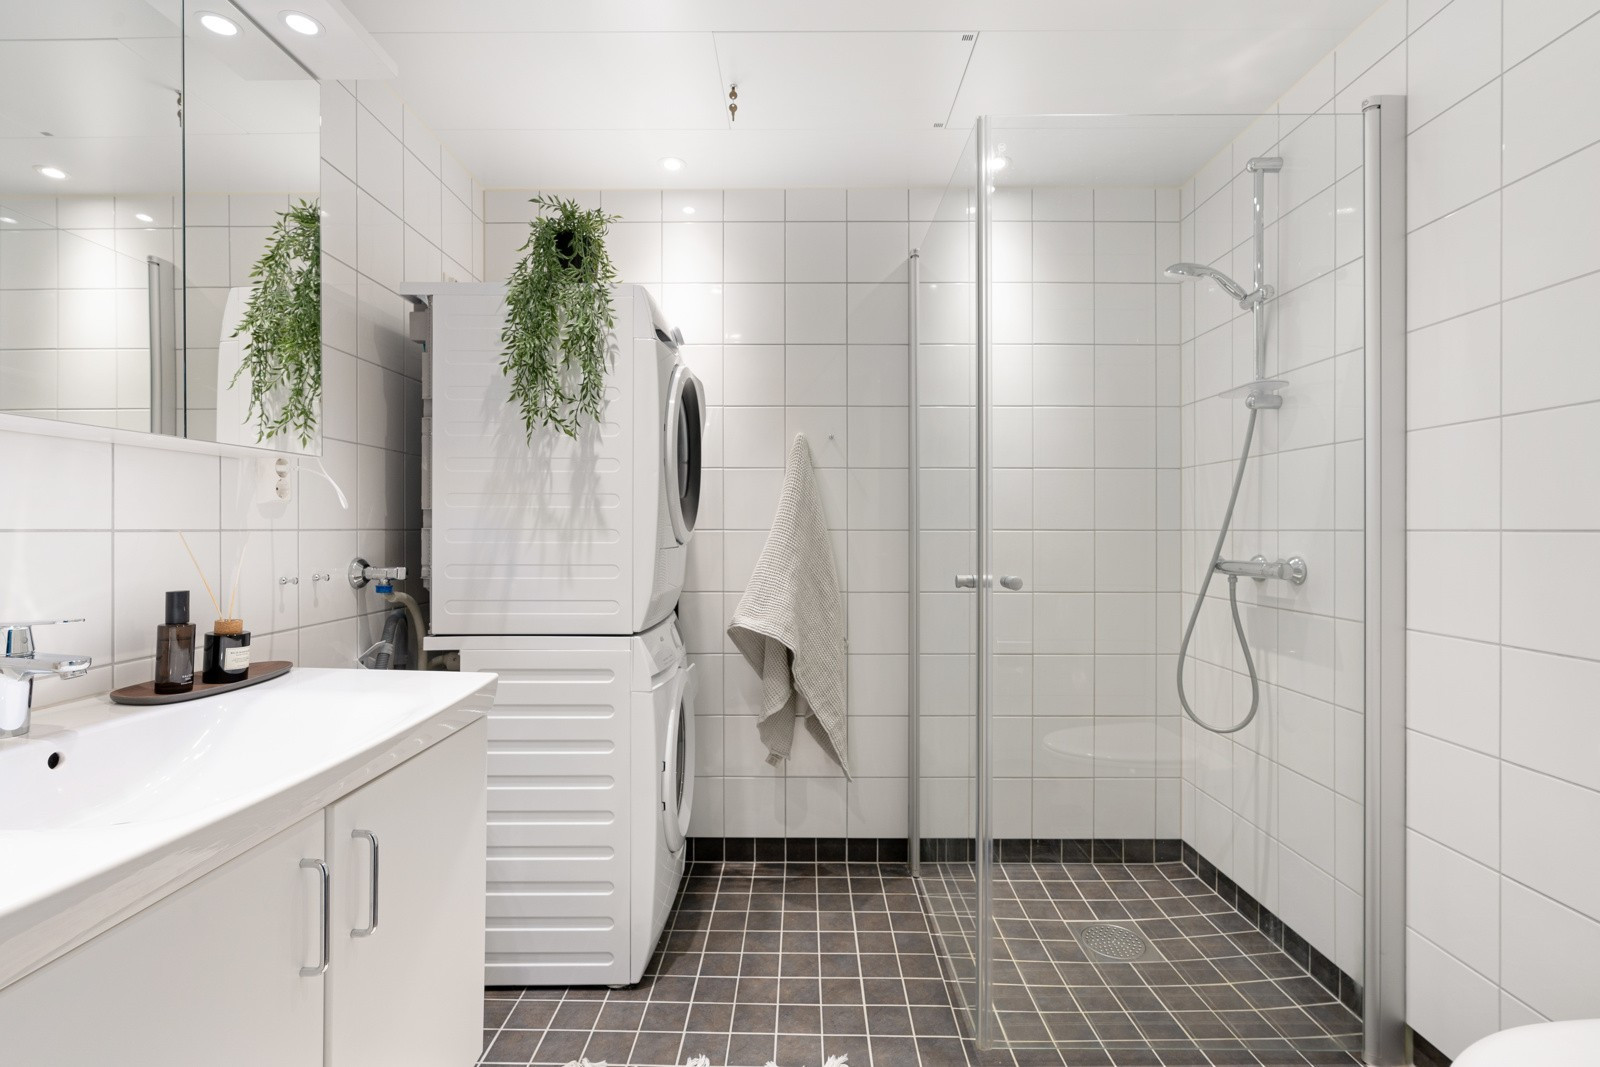 Flislagt og moderne bad med stort dusjhjørne, praktisk vegghengt wc og opplegg for vaskemaskin.